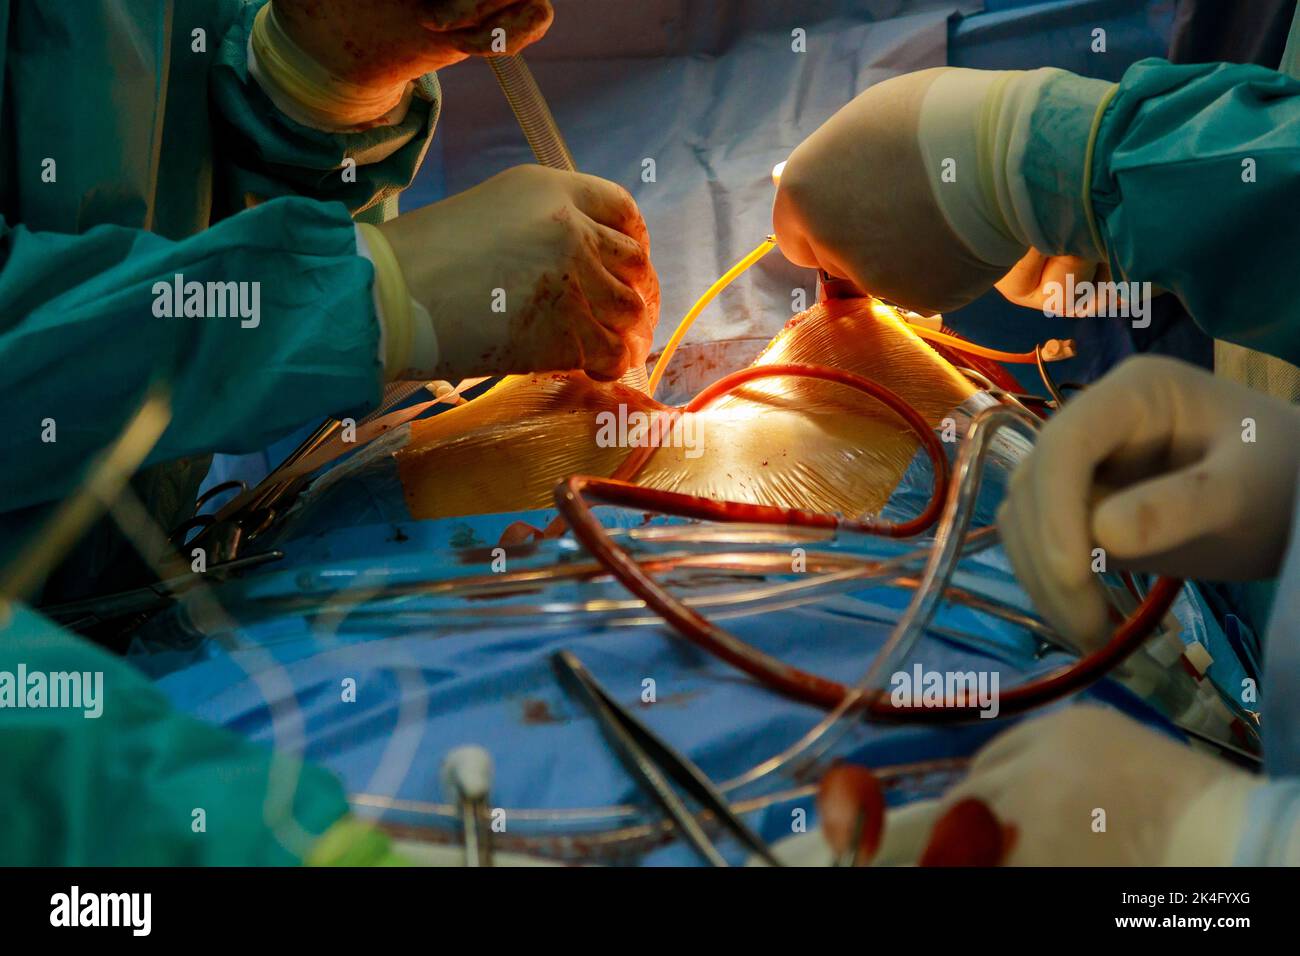 Come parte delle operazioni cardiache a causa di malattie coronariche che sono in corso di esecuzione nella sala operatoria di un ospedale, bypass coronarico arterie Foto Stock